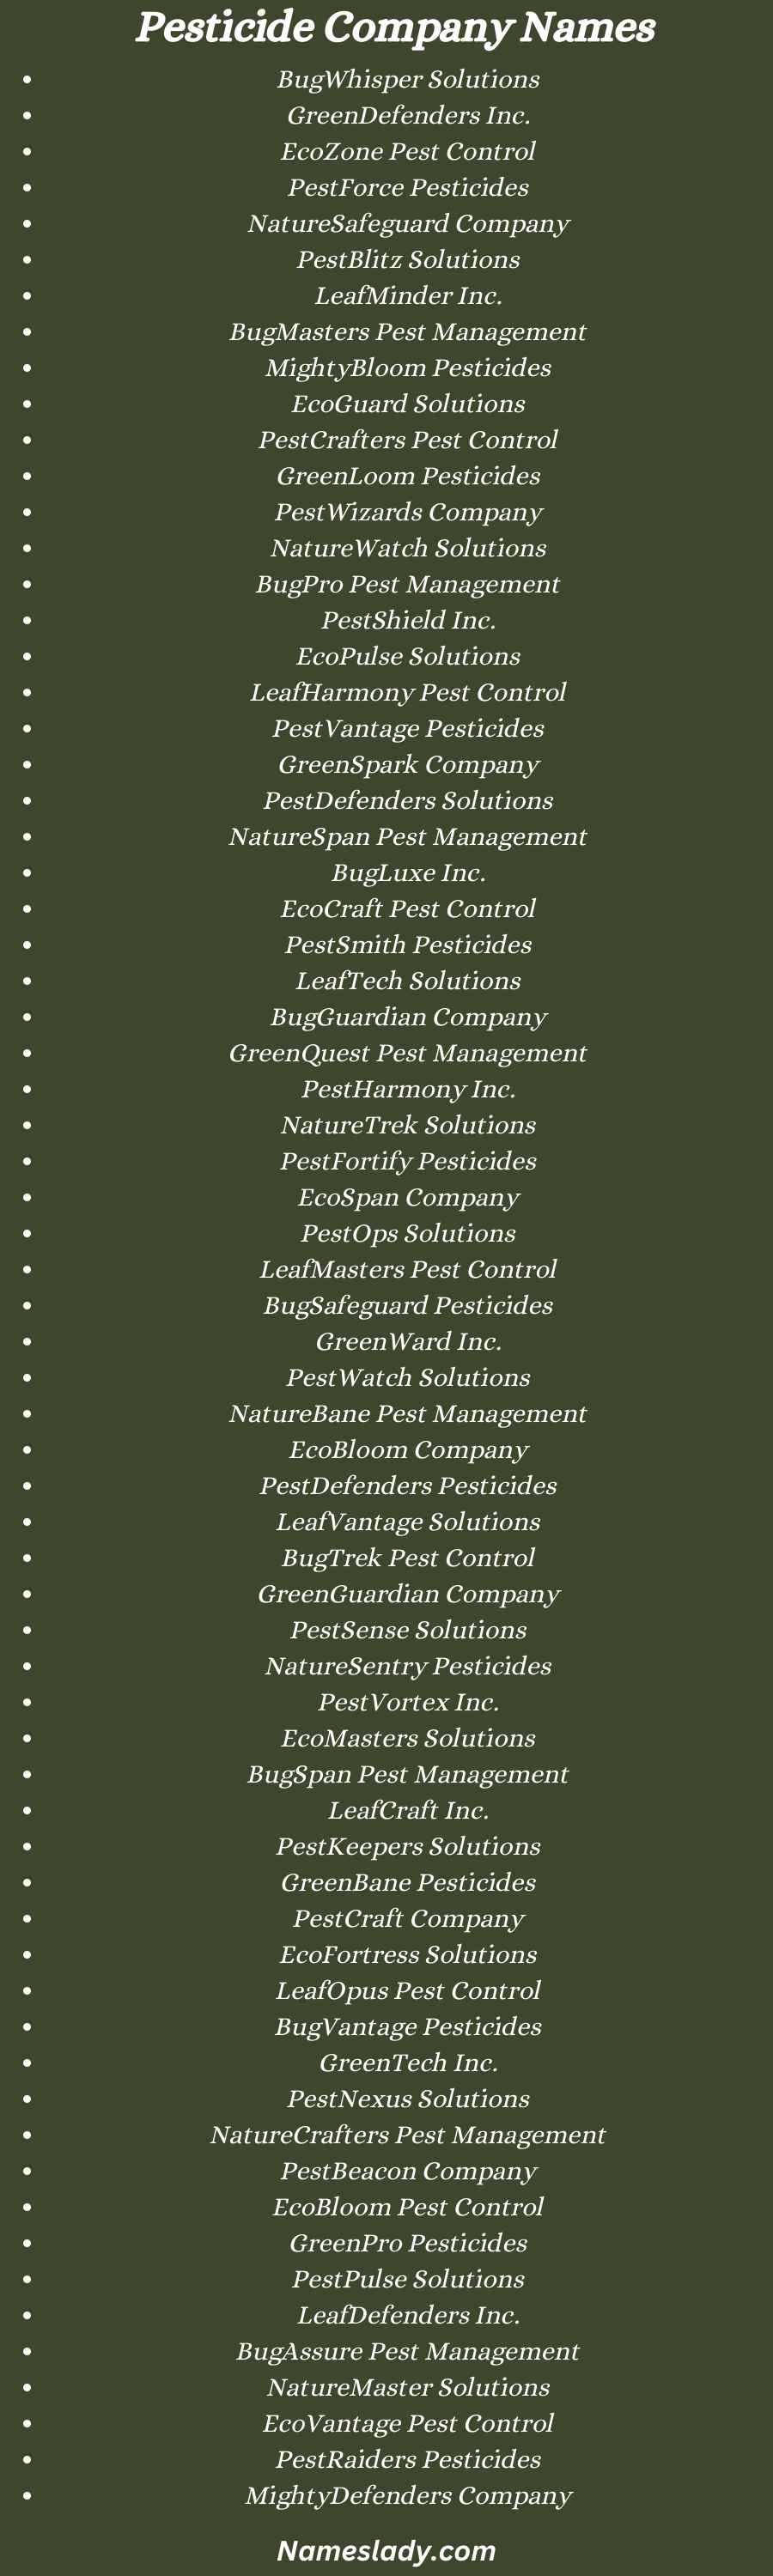 Pesticide Company Names